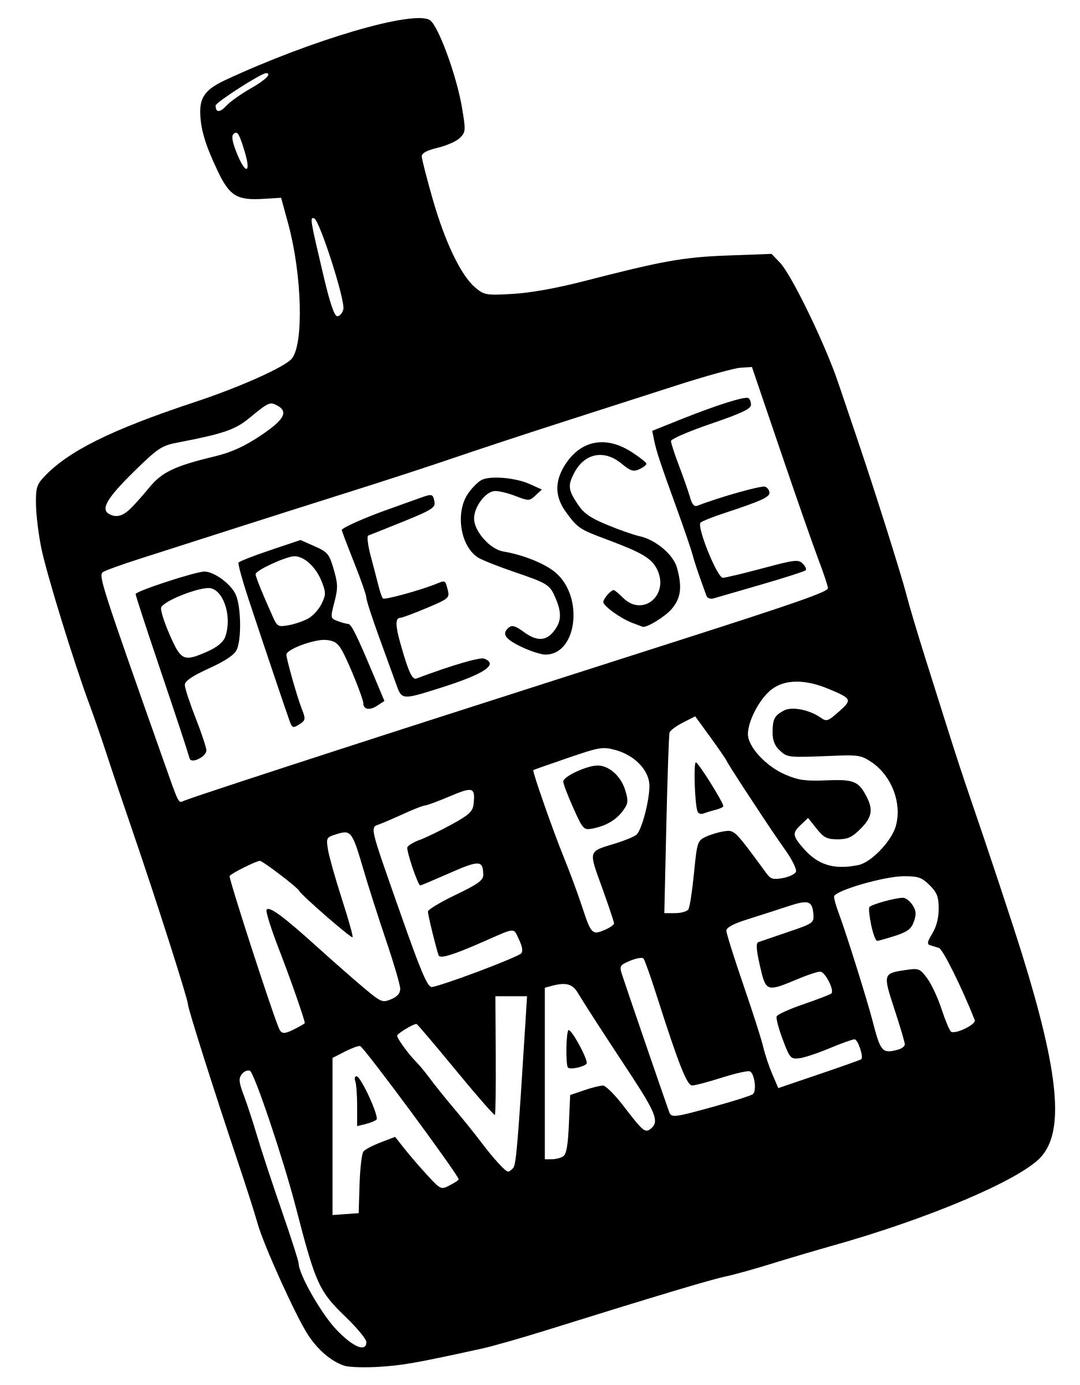 Presse ne pas avaler (Press : don't swallow) png transparent